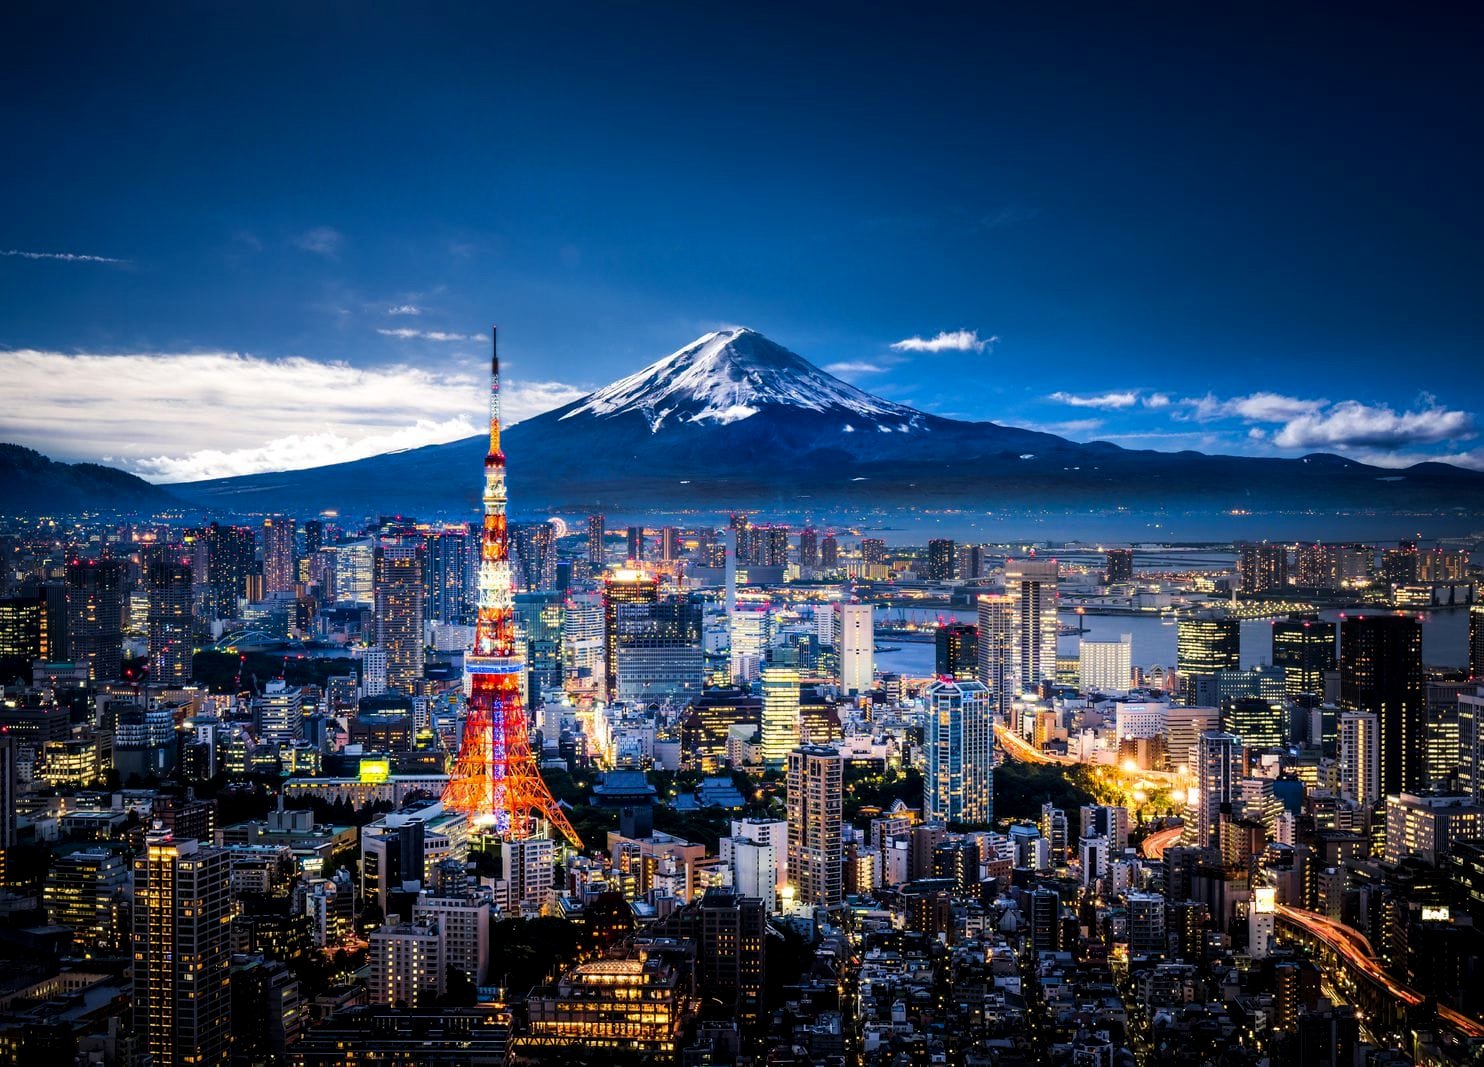 दुई वर्षपछि विदेशी पर्यटकका लागि जापान खुला